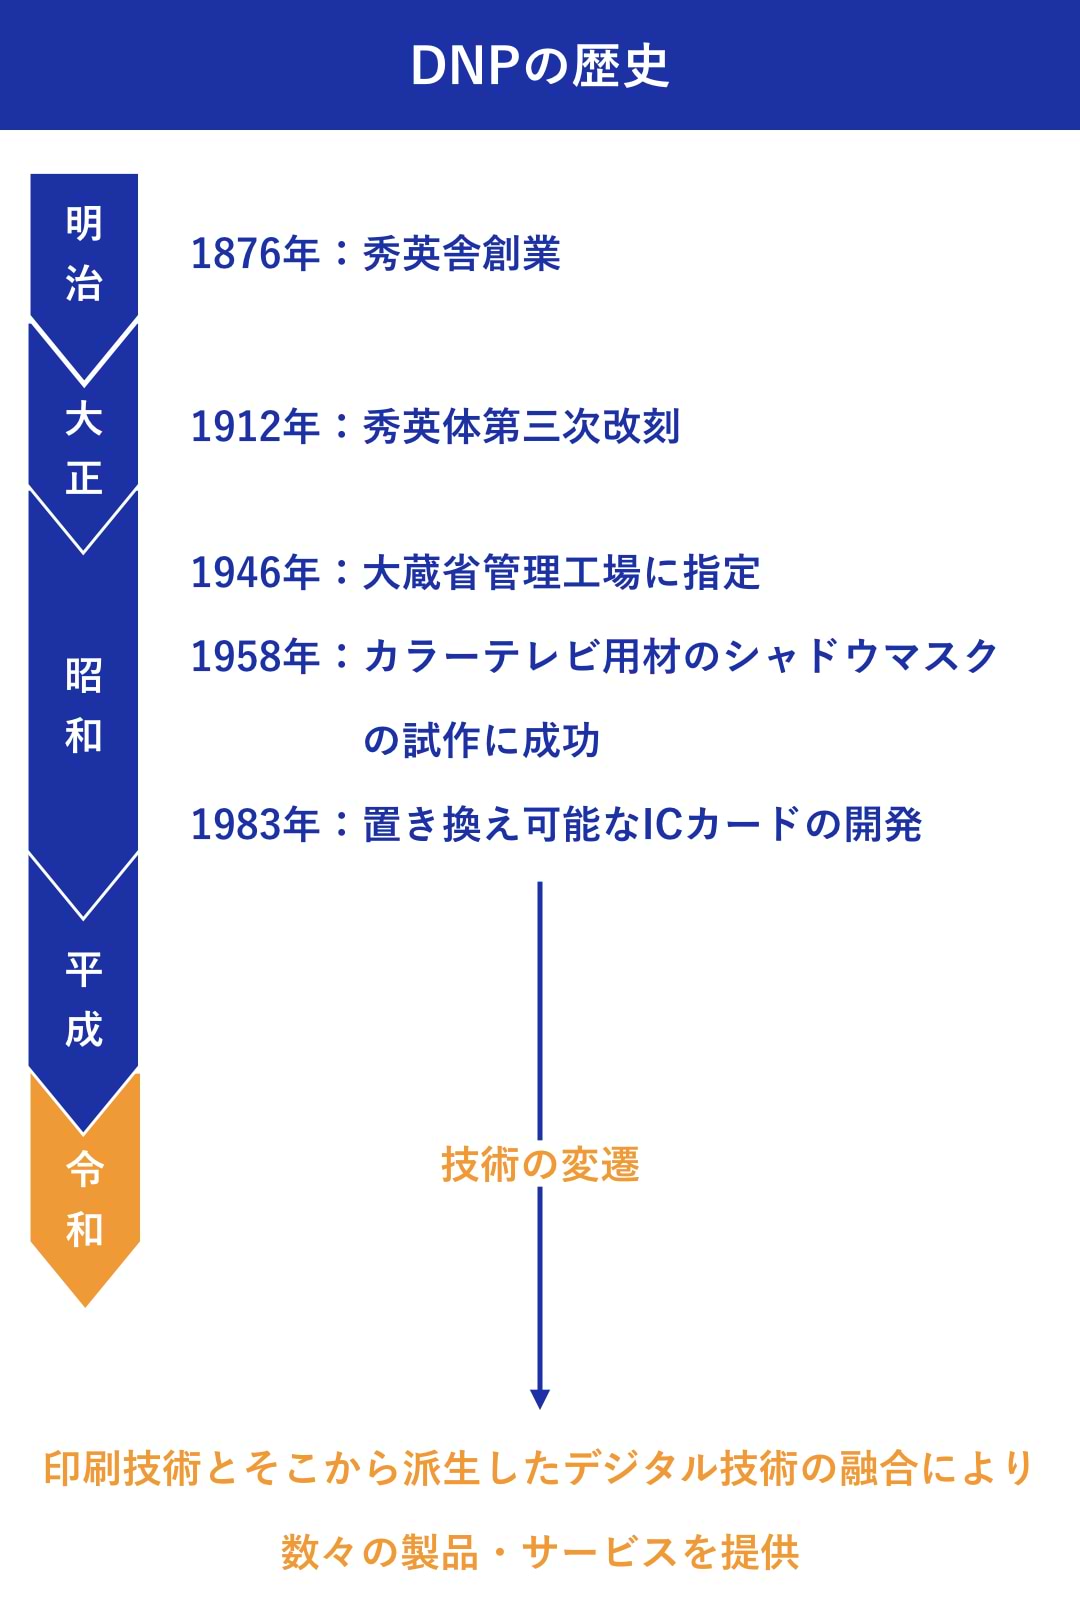 大日本印刷株式会社：加藤 綱貴　DNPの歴史